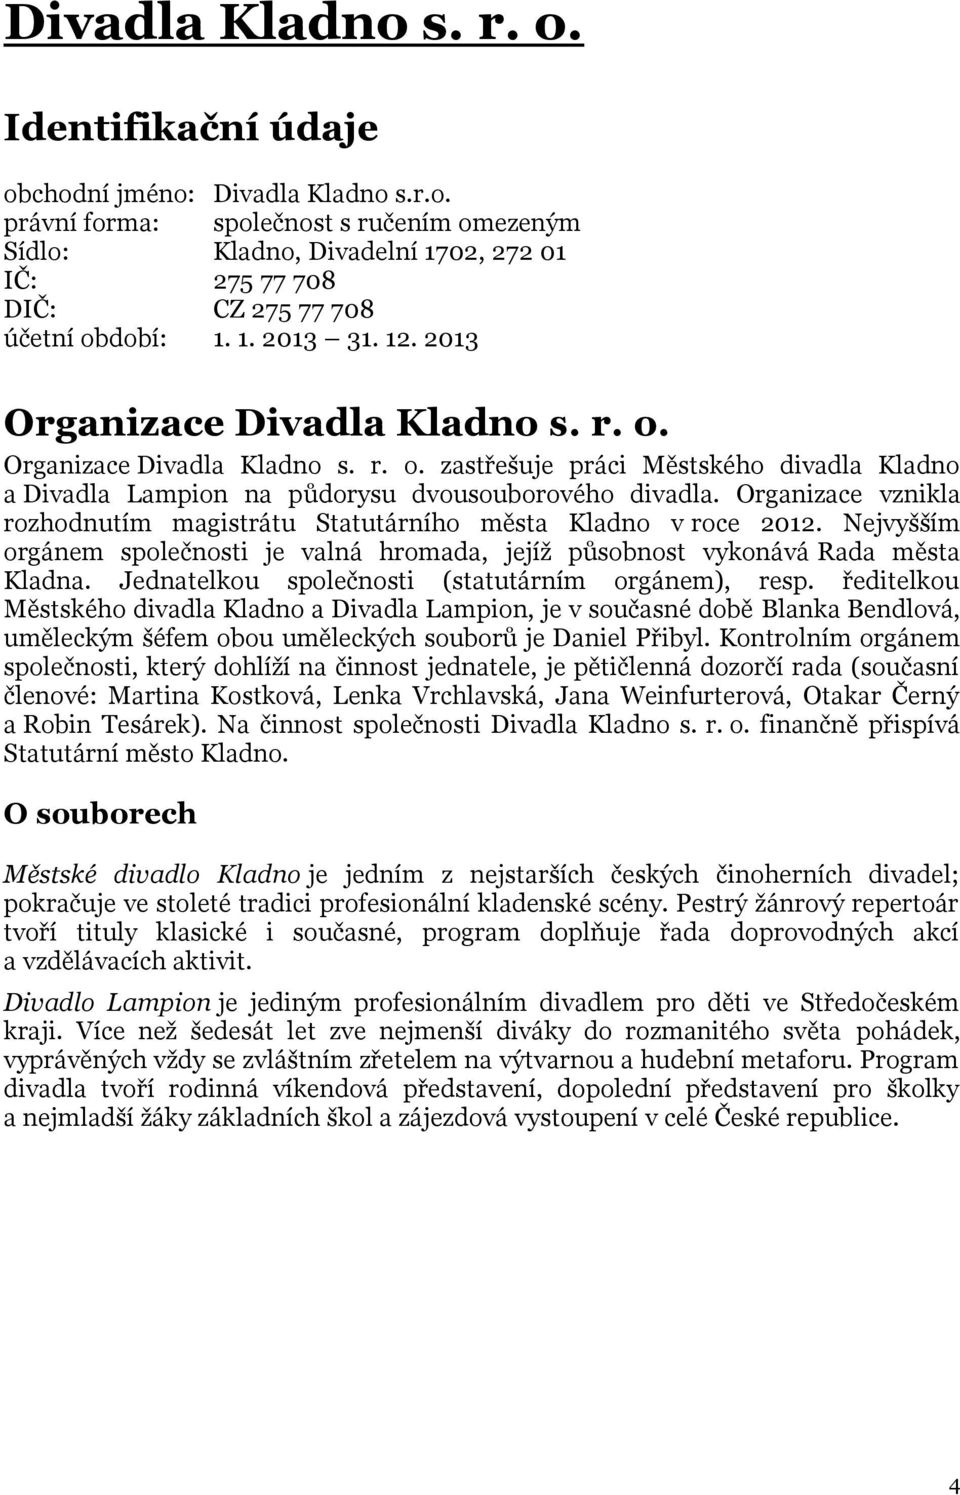 Organizace vznikla rozhodnutím magistrátu Statutárního města Kladno v roce 2012. Nejvyšším orgánem společnosti je valná hromada, jejíž působnost vykonává Rada města Kladna.